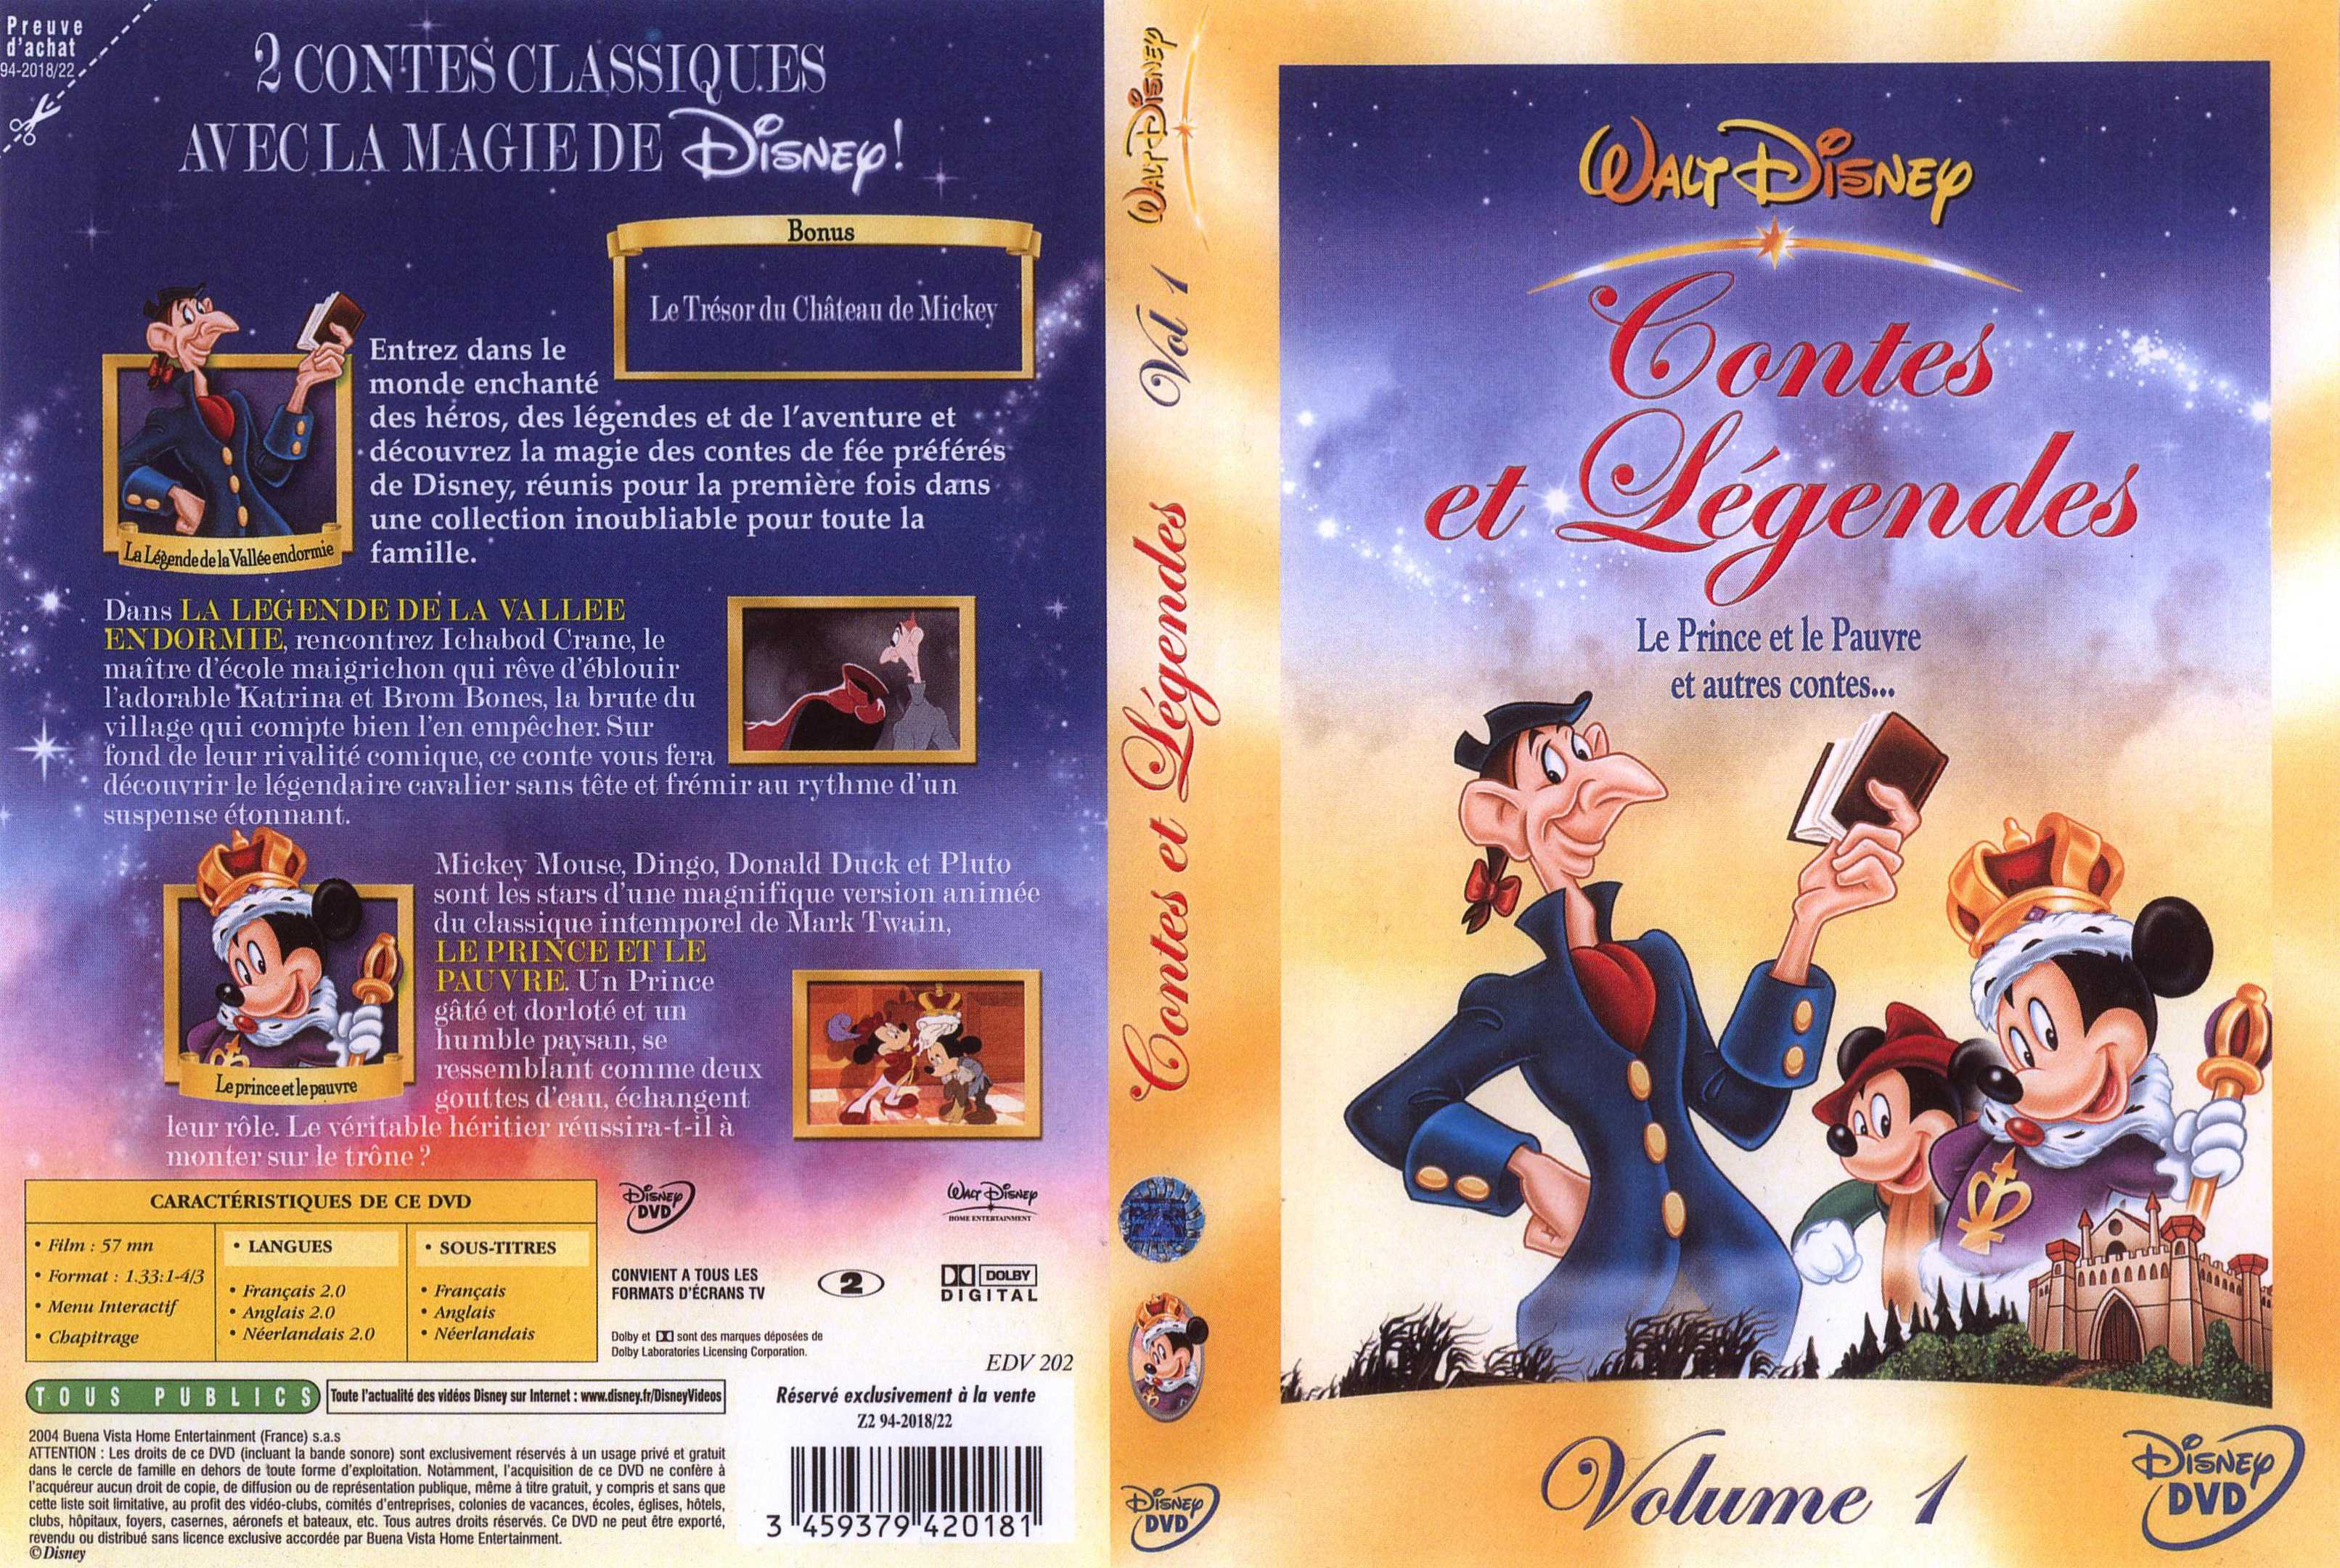 Jaquette DVD Contes et legendes 1 v2